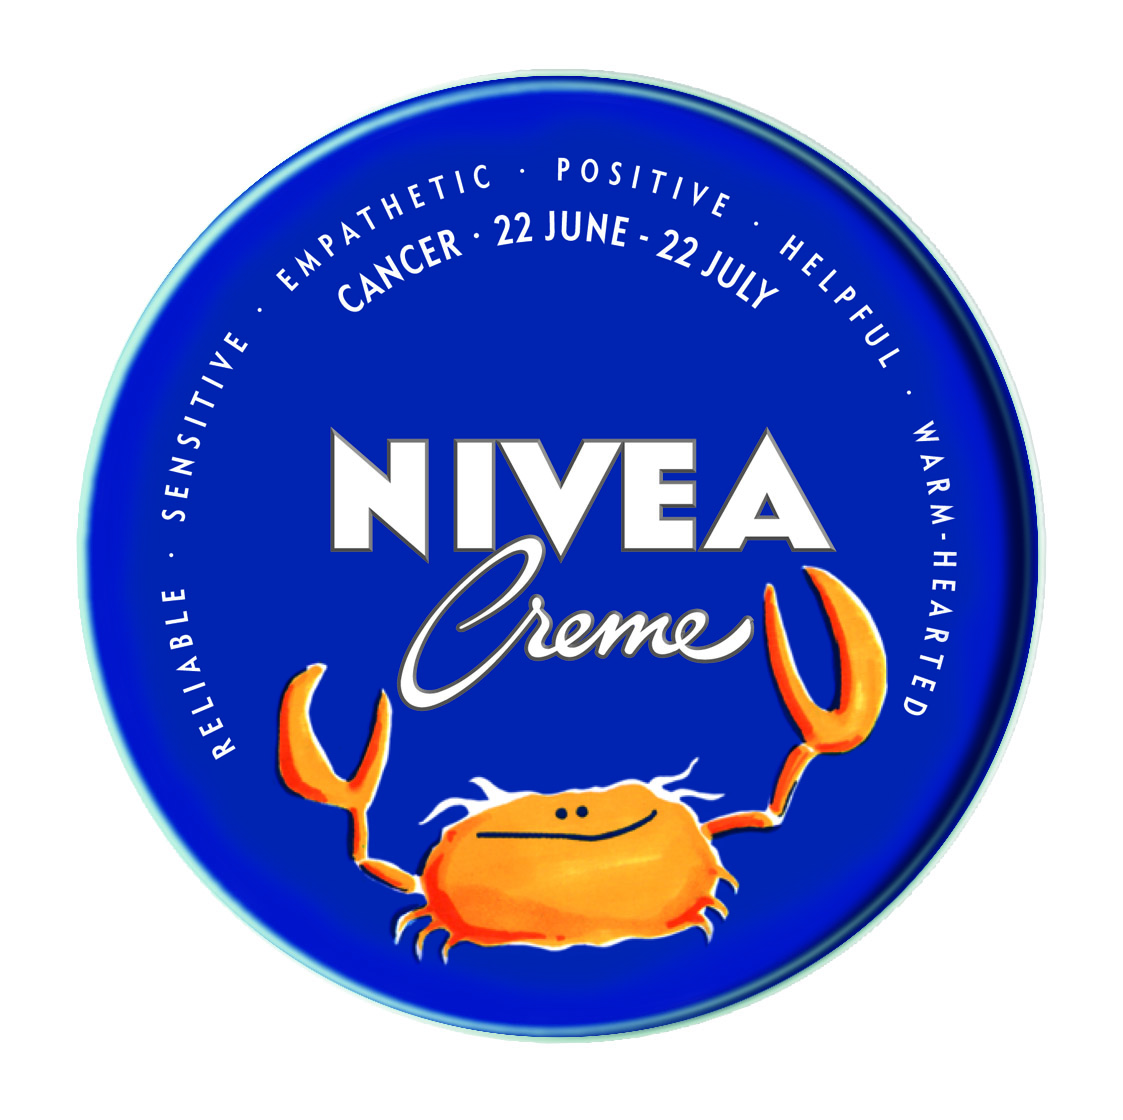 NIVEA Creme Cancer.jpg